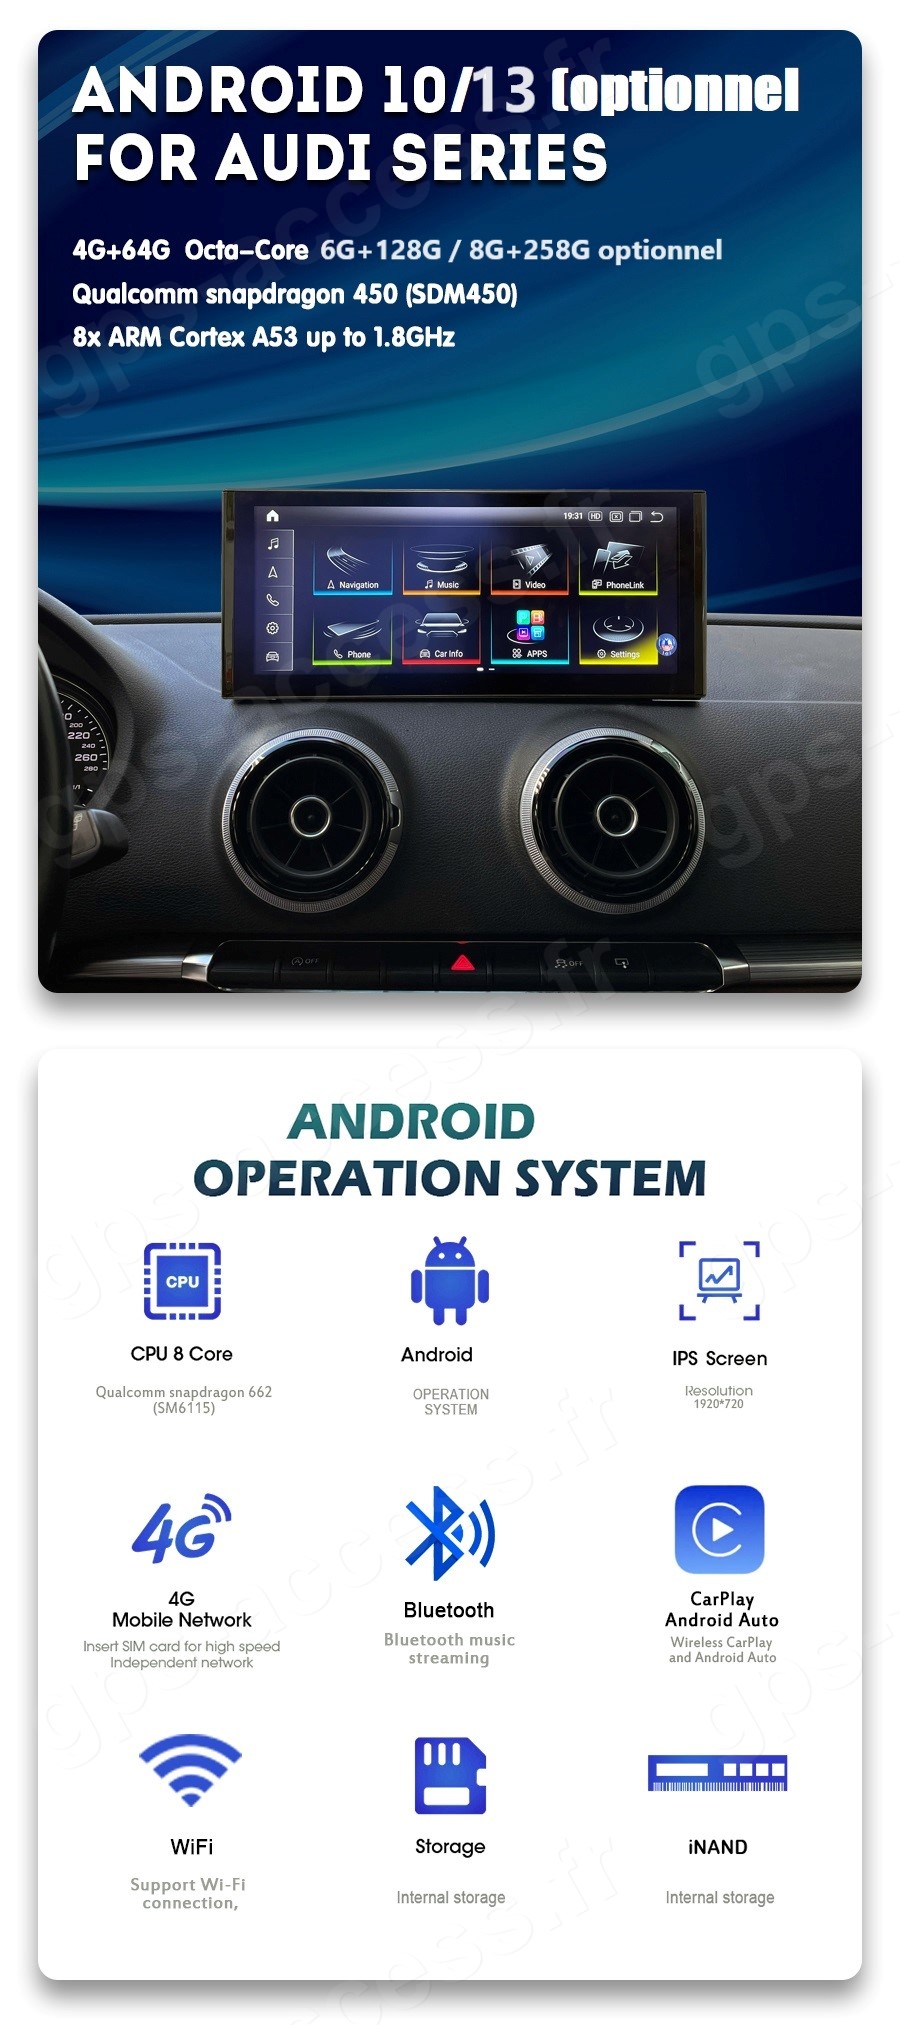 Poste autoradio DVD GPS Audi Q5 aux prix les plus bas sur notre